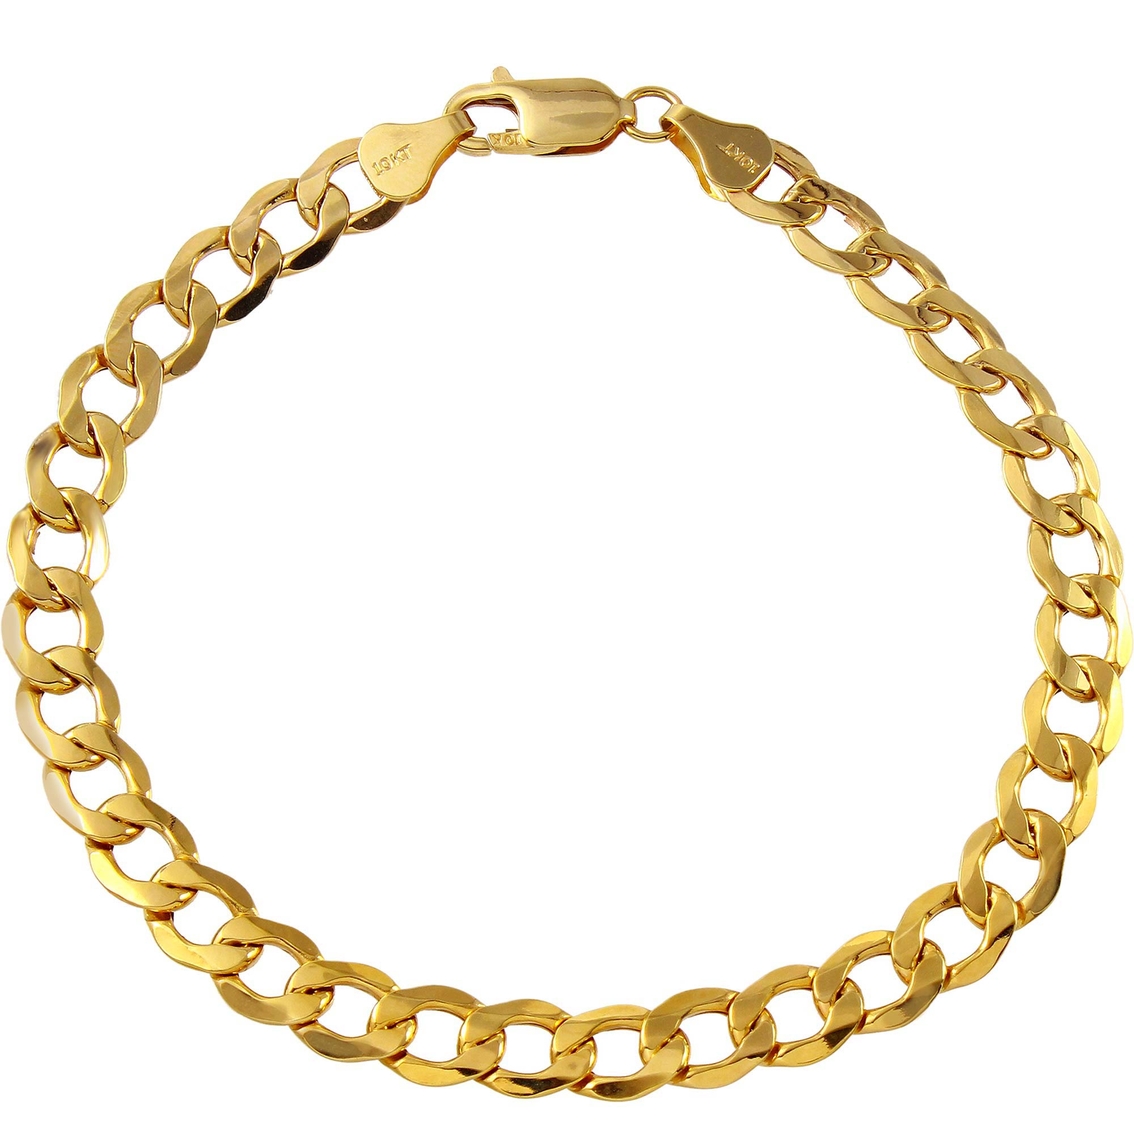 10k Yellow Gold 7mm Curb Link Bracelet | Men's Bracelets | Jewelry ...